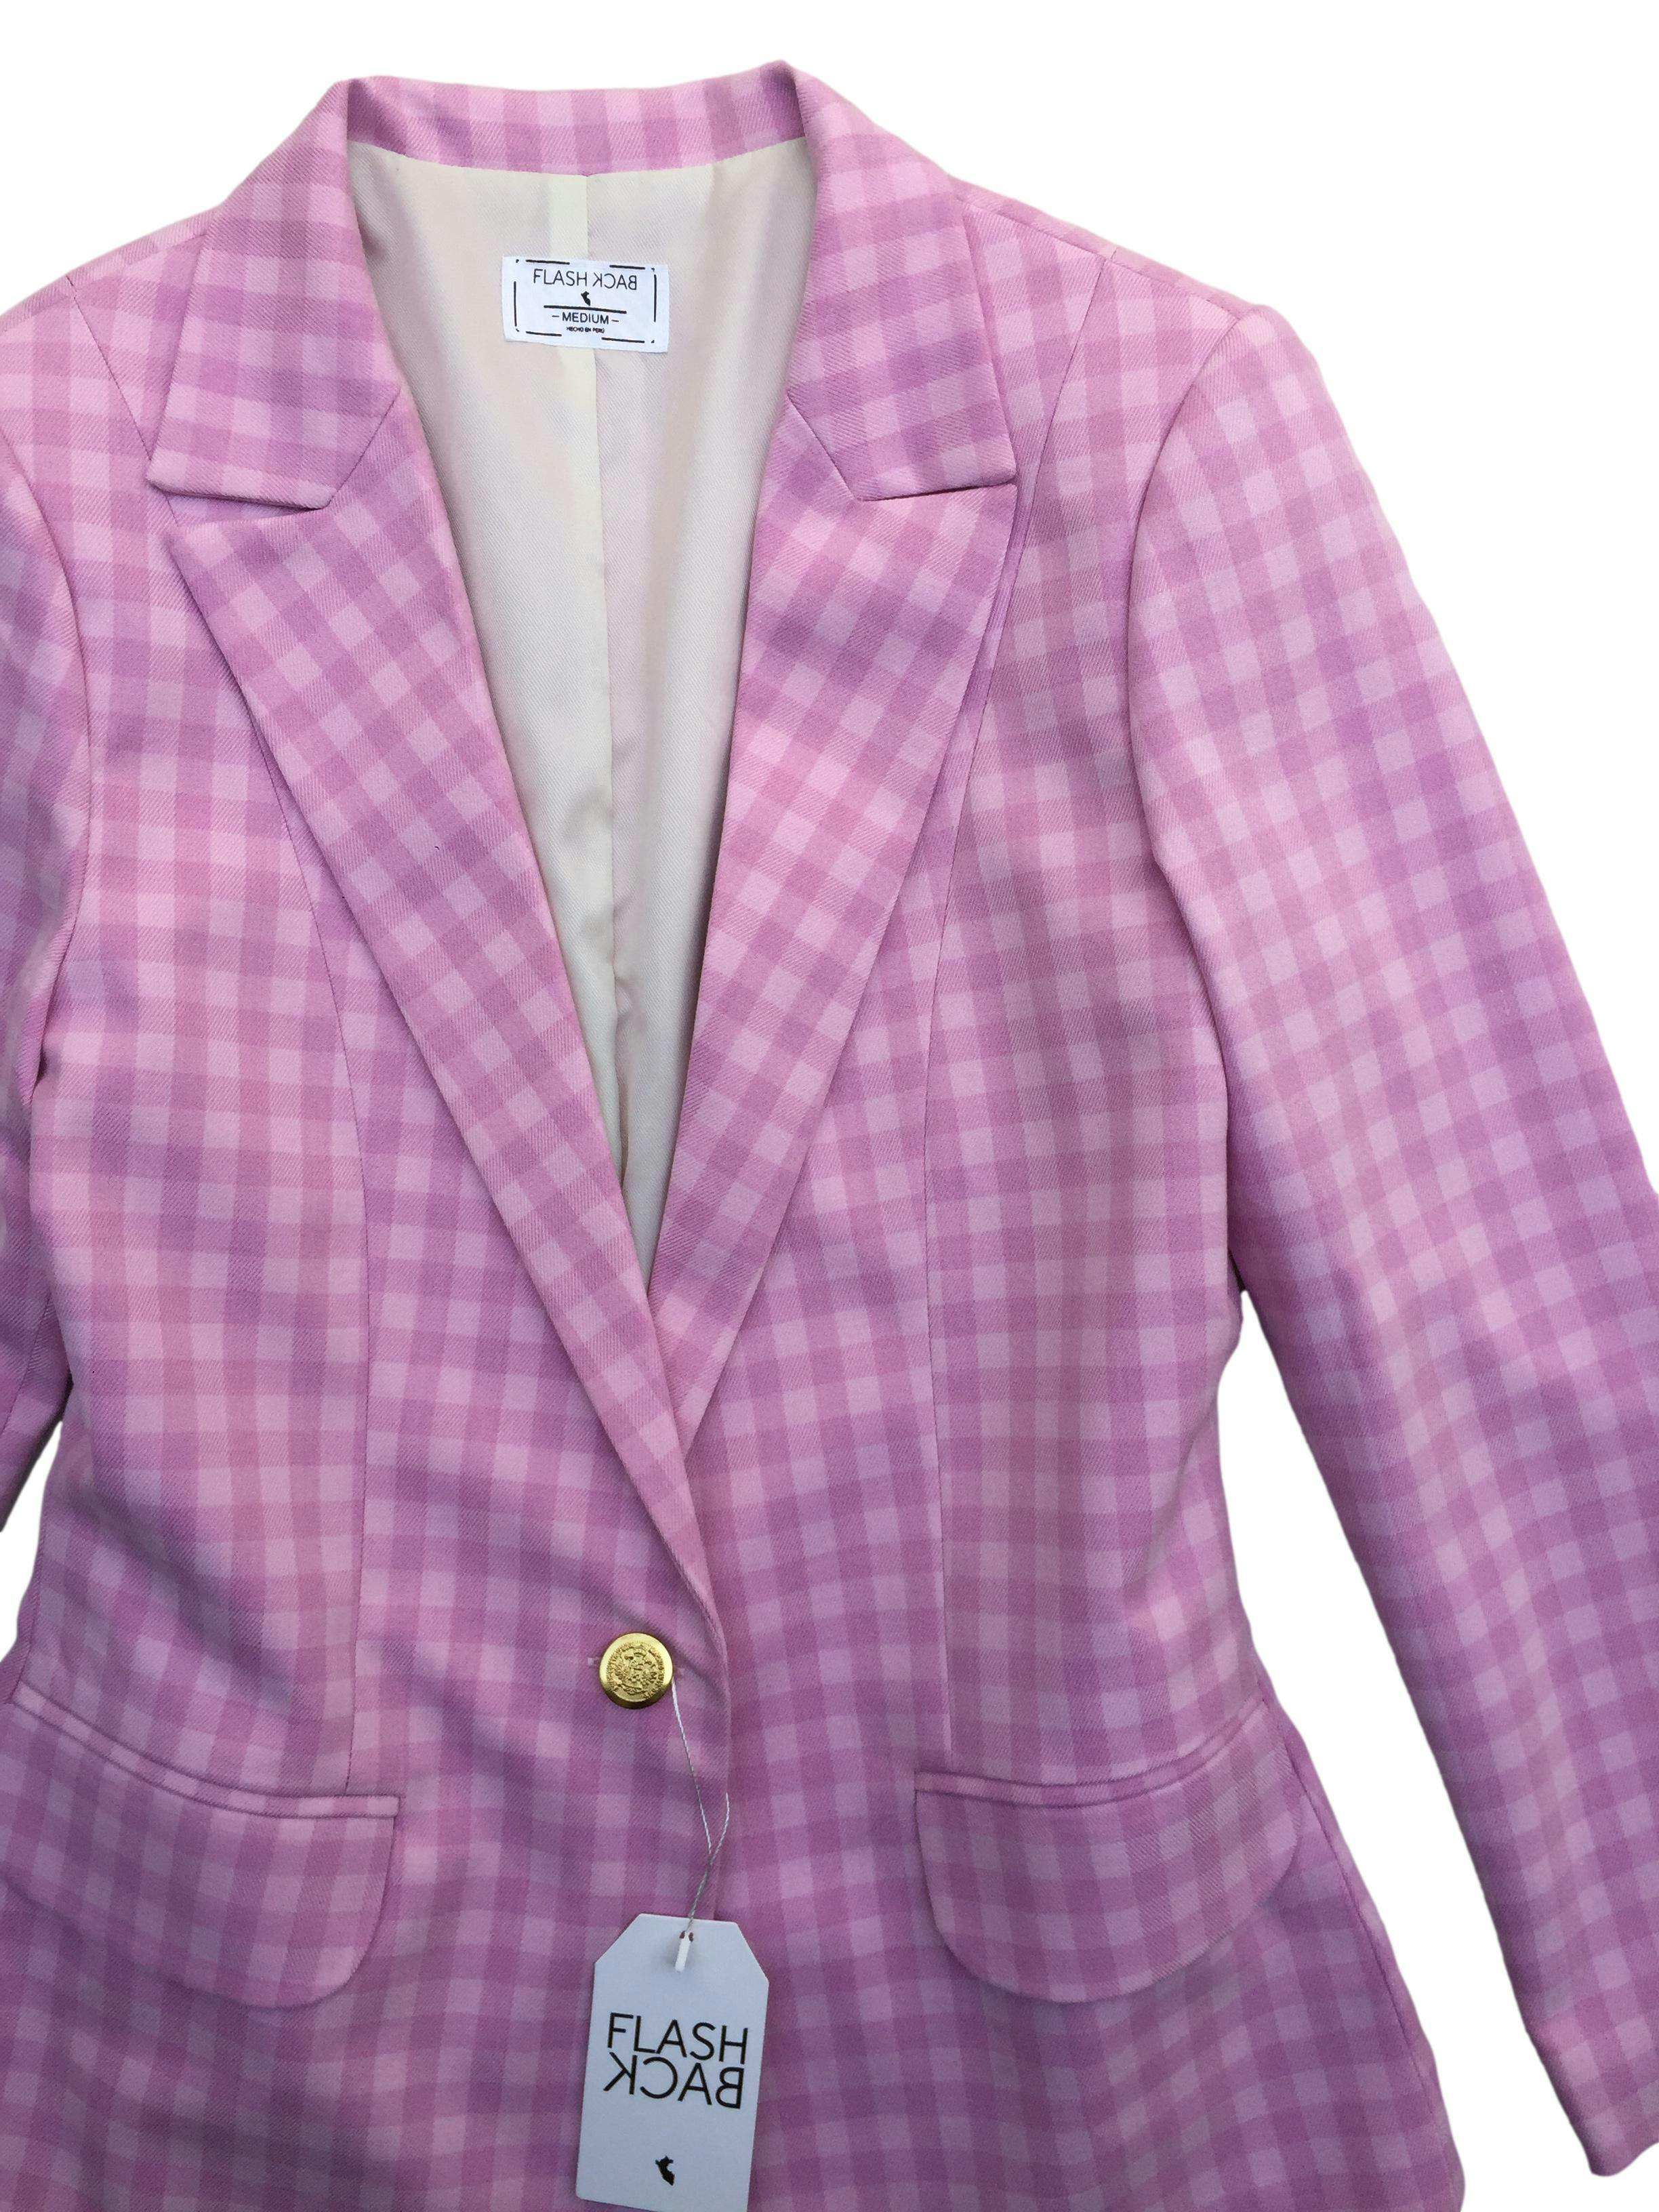 Blazer Flashback a cuadros rosados, forrado, hombreras ligeras, modelo de un botón y bolsillos delanteros. Busto 100cm Largo 65cm. Nuevo con etiqueta, precio original S/ 249